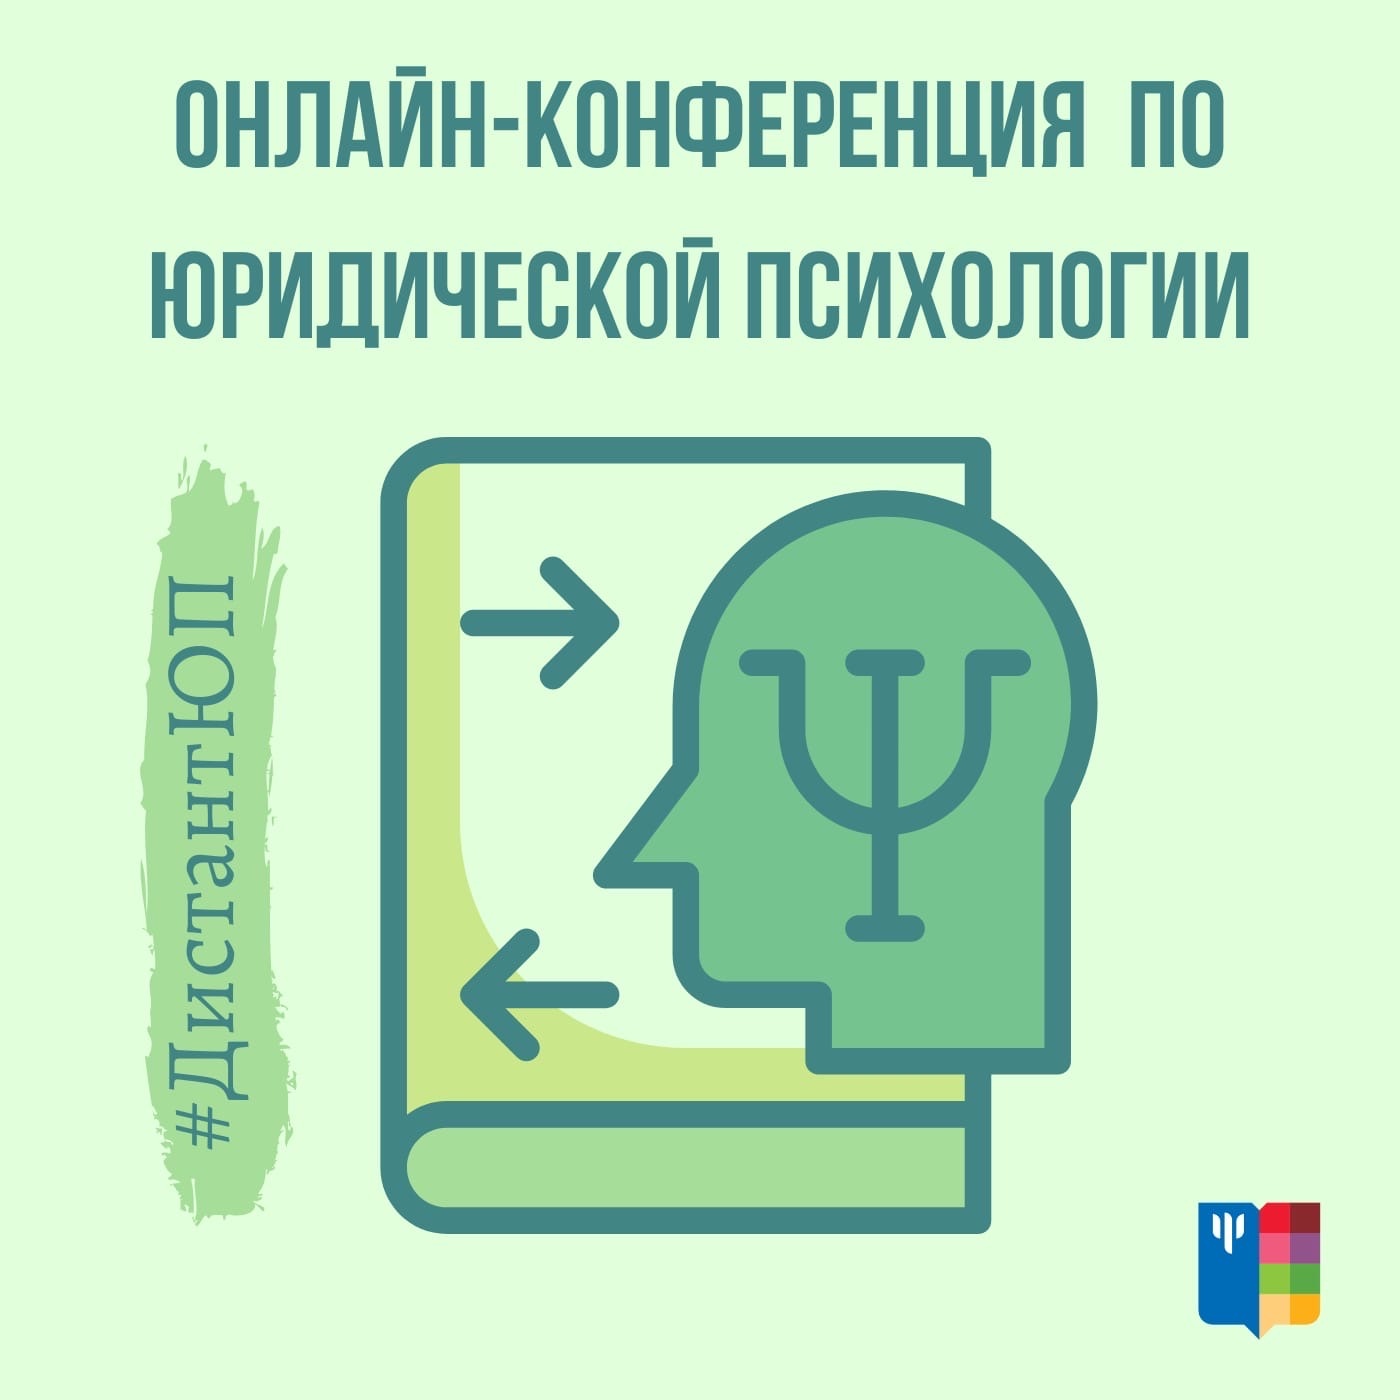 2021-04-06 Межвузовская научно-практическая интернет-конференция по юридической психологии